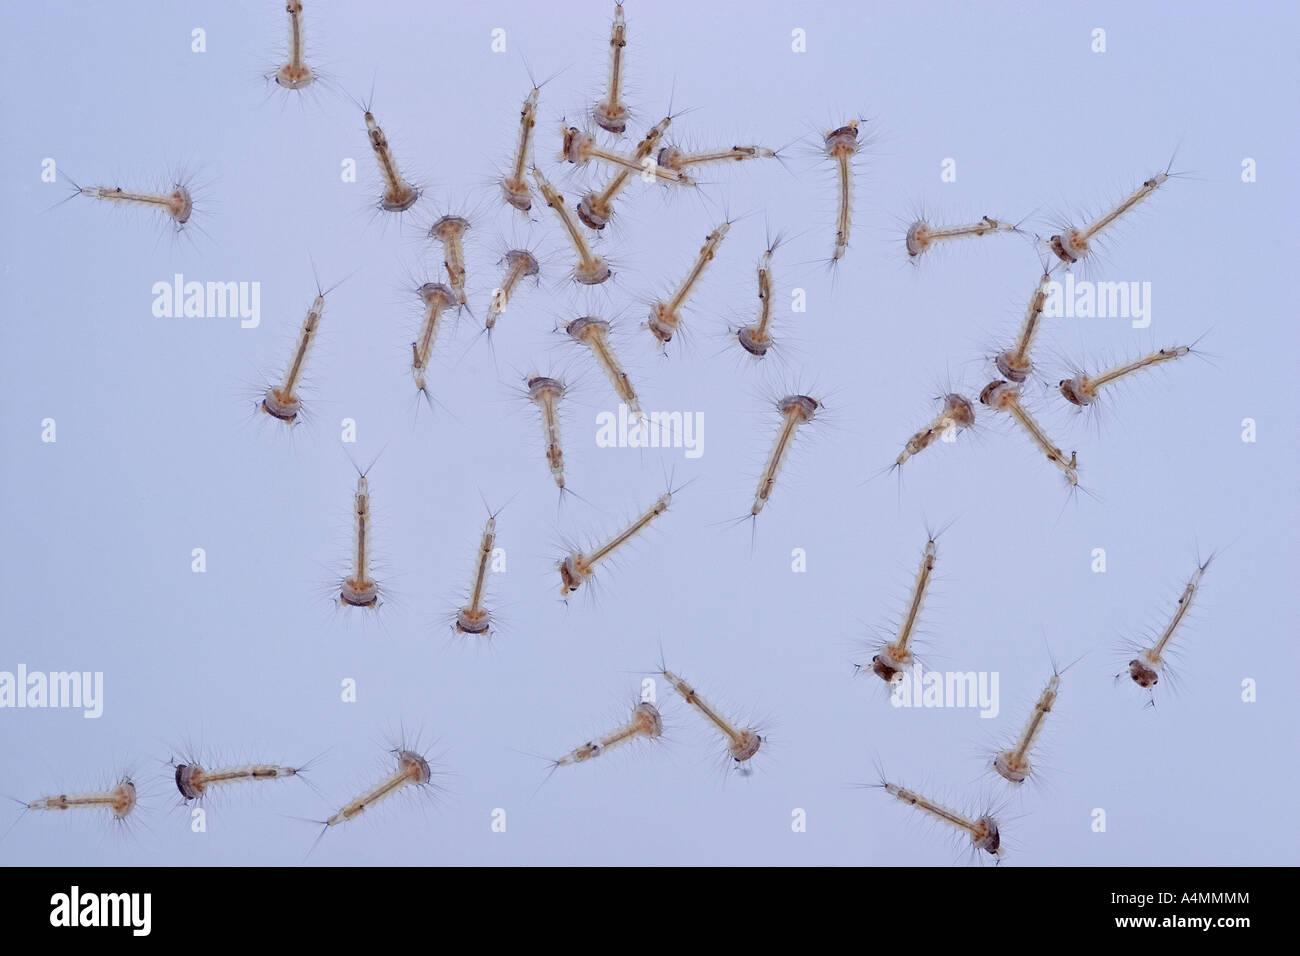 Le larve delle zanzare comune (Culex pipiens). Larves de moustiques domestiques communs (Culex pipiens). Foto Stock